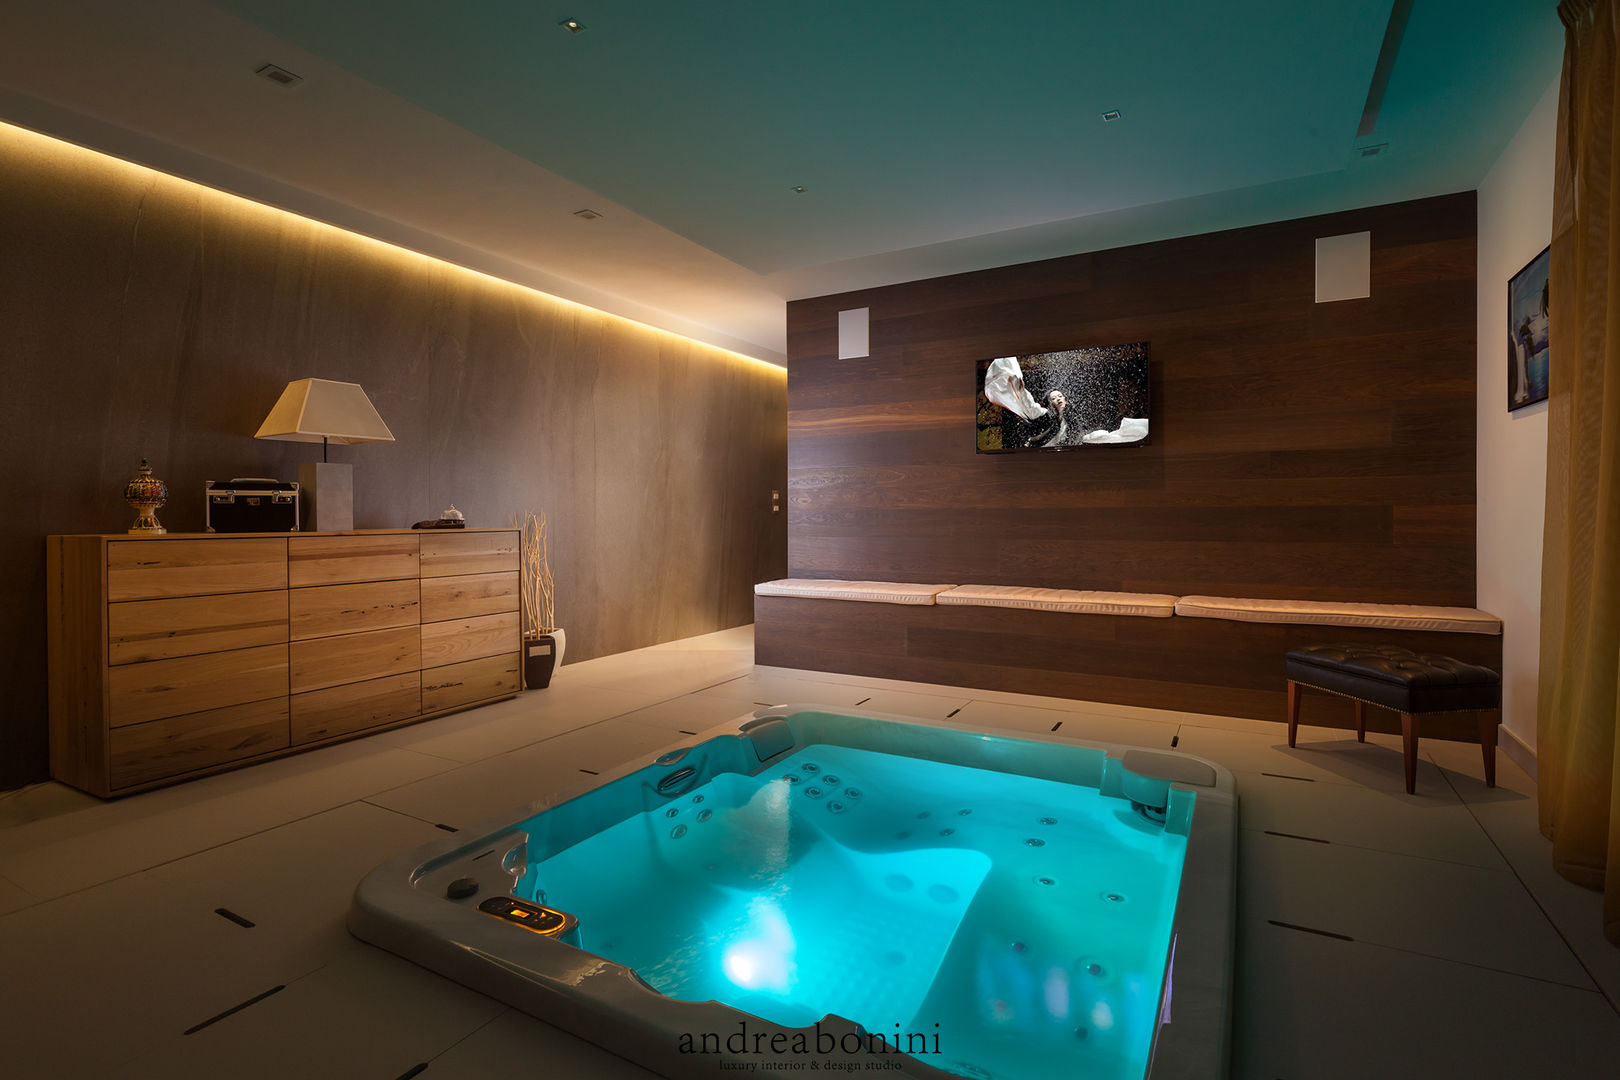 Villa on lake Garda, Andrea Bonini luxury interior & design studio Andrea Bonini luxury interior & design studio Spa Modern